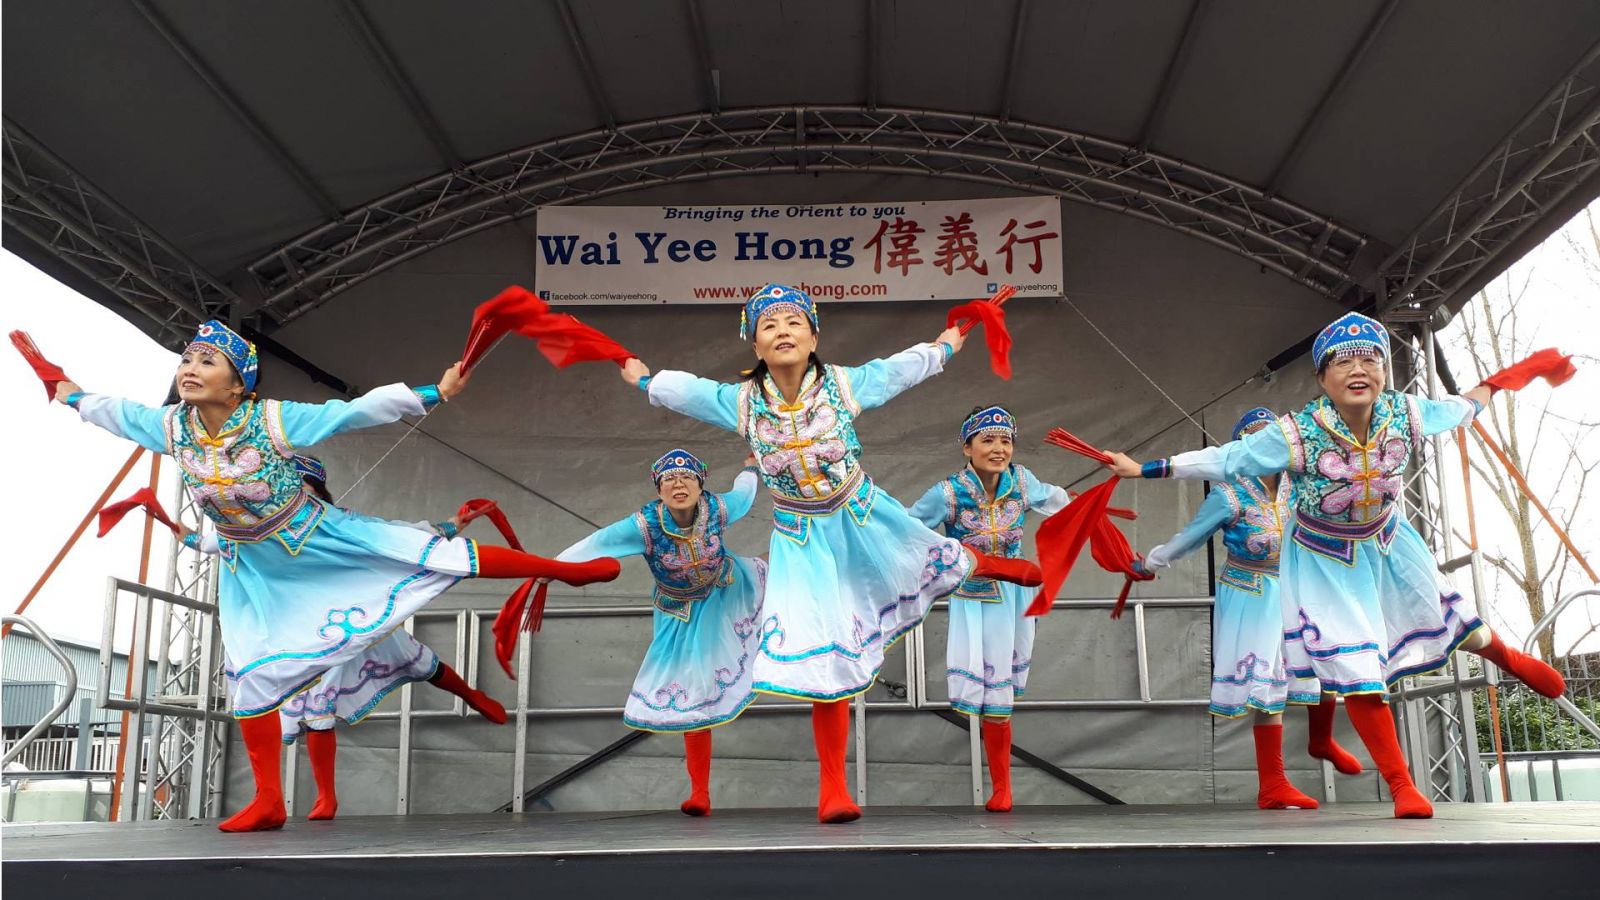 Wai Yee Hong Chinese New Year in Bristol